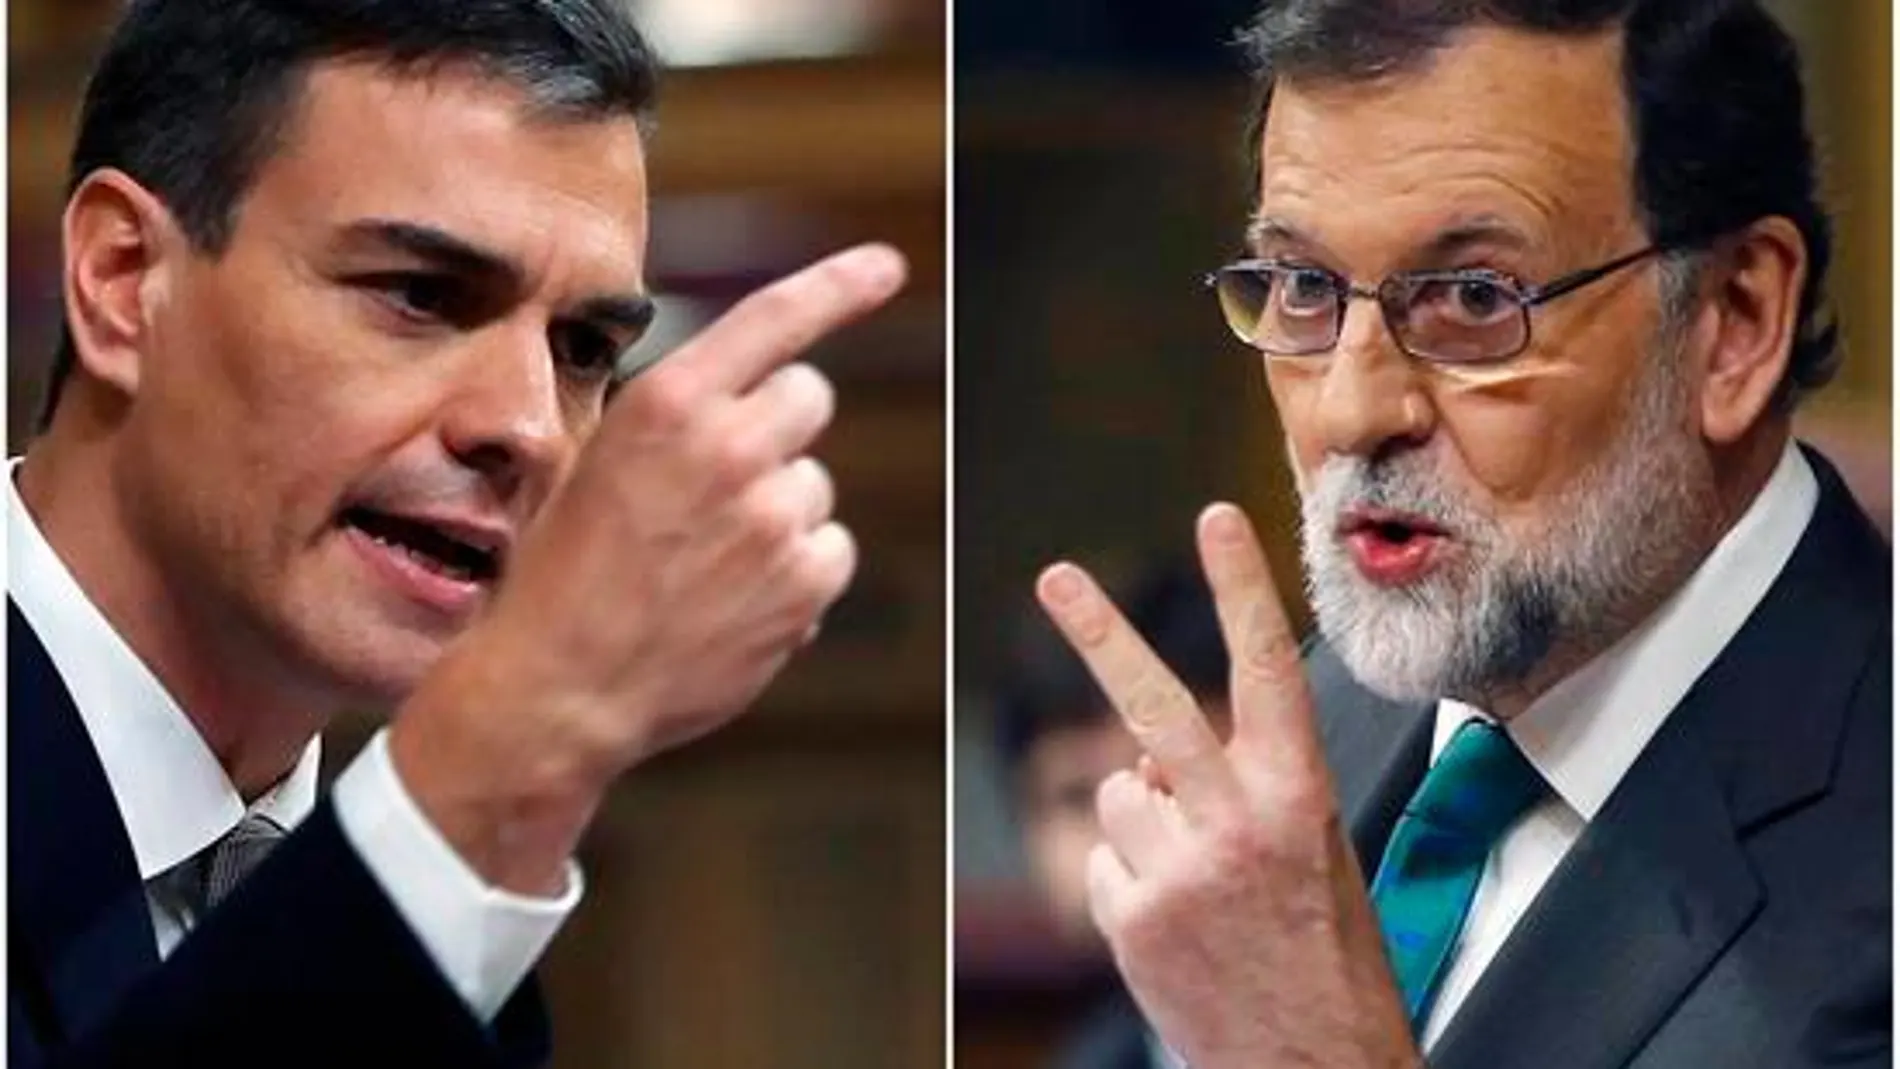 Pedro Sánchez y Mariano Rajoy, en una imagen de archivo / Efe